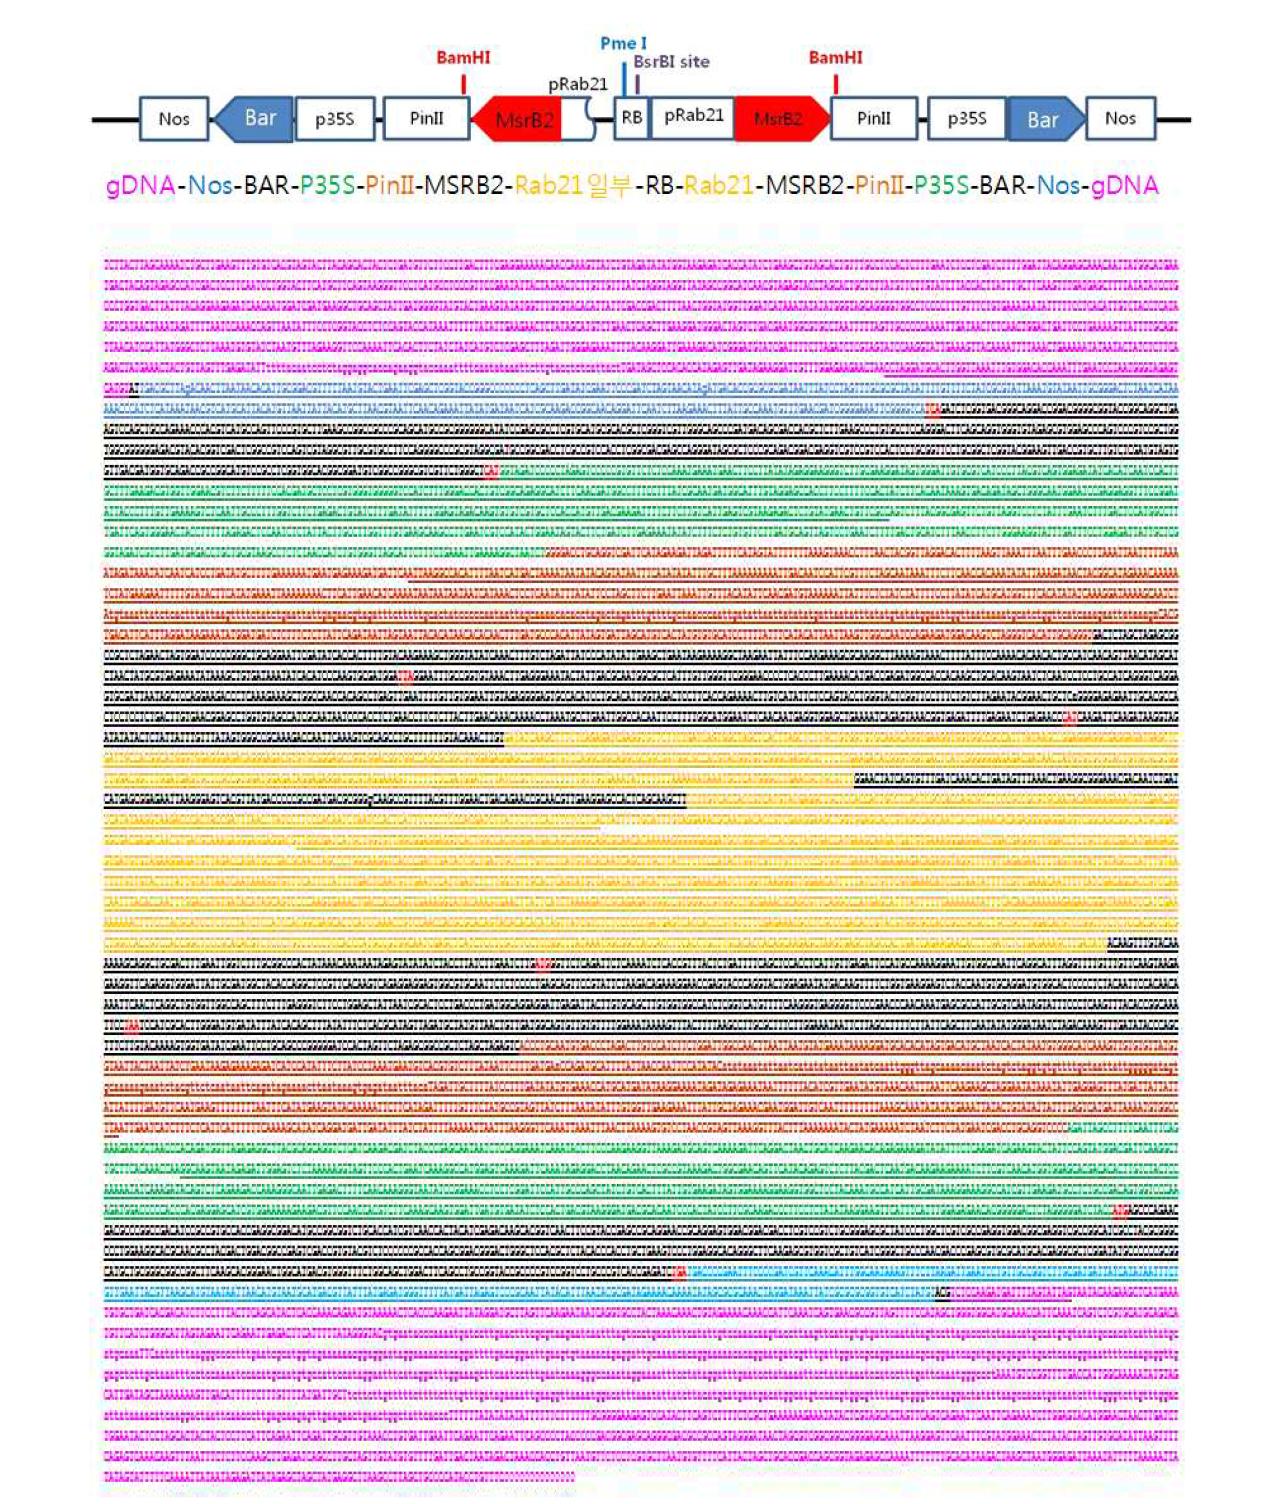 가뭄저항성벼 Agb0103 내 도입 유전자들의 전체 염기서열 분석